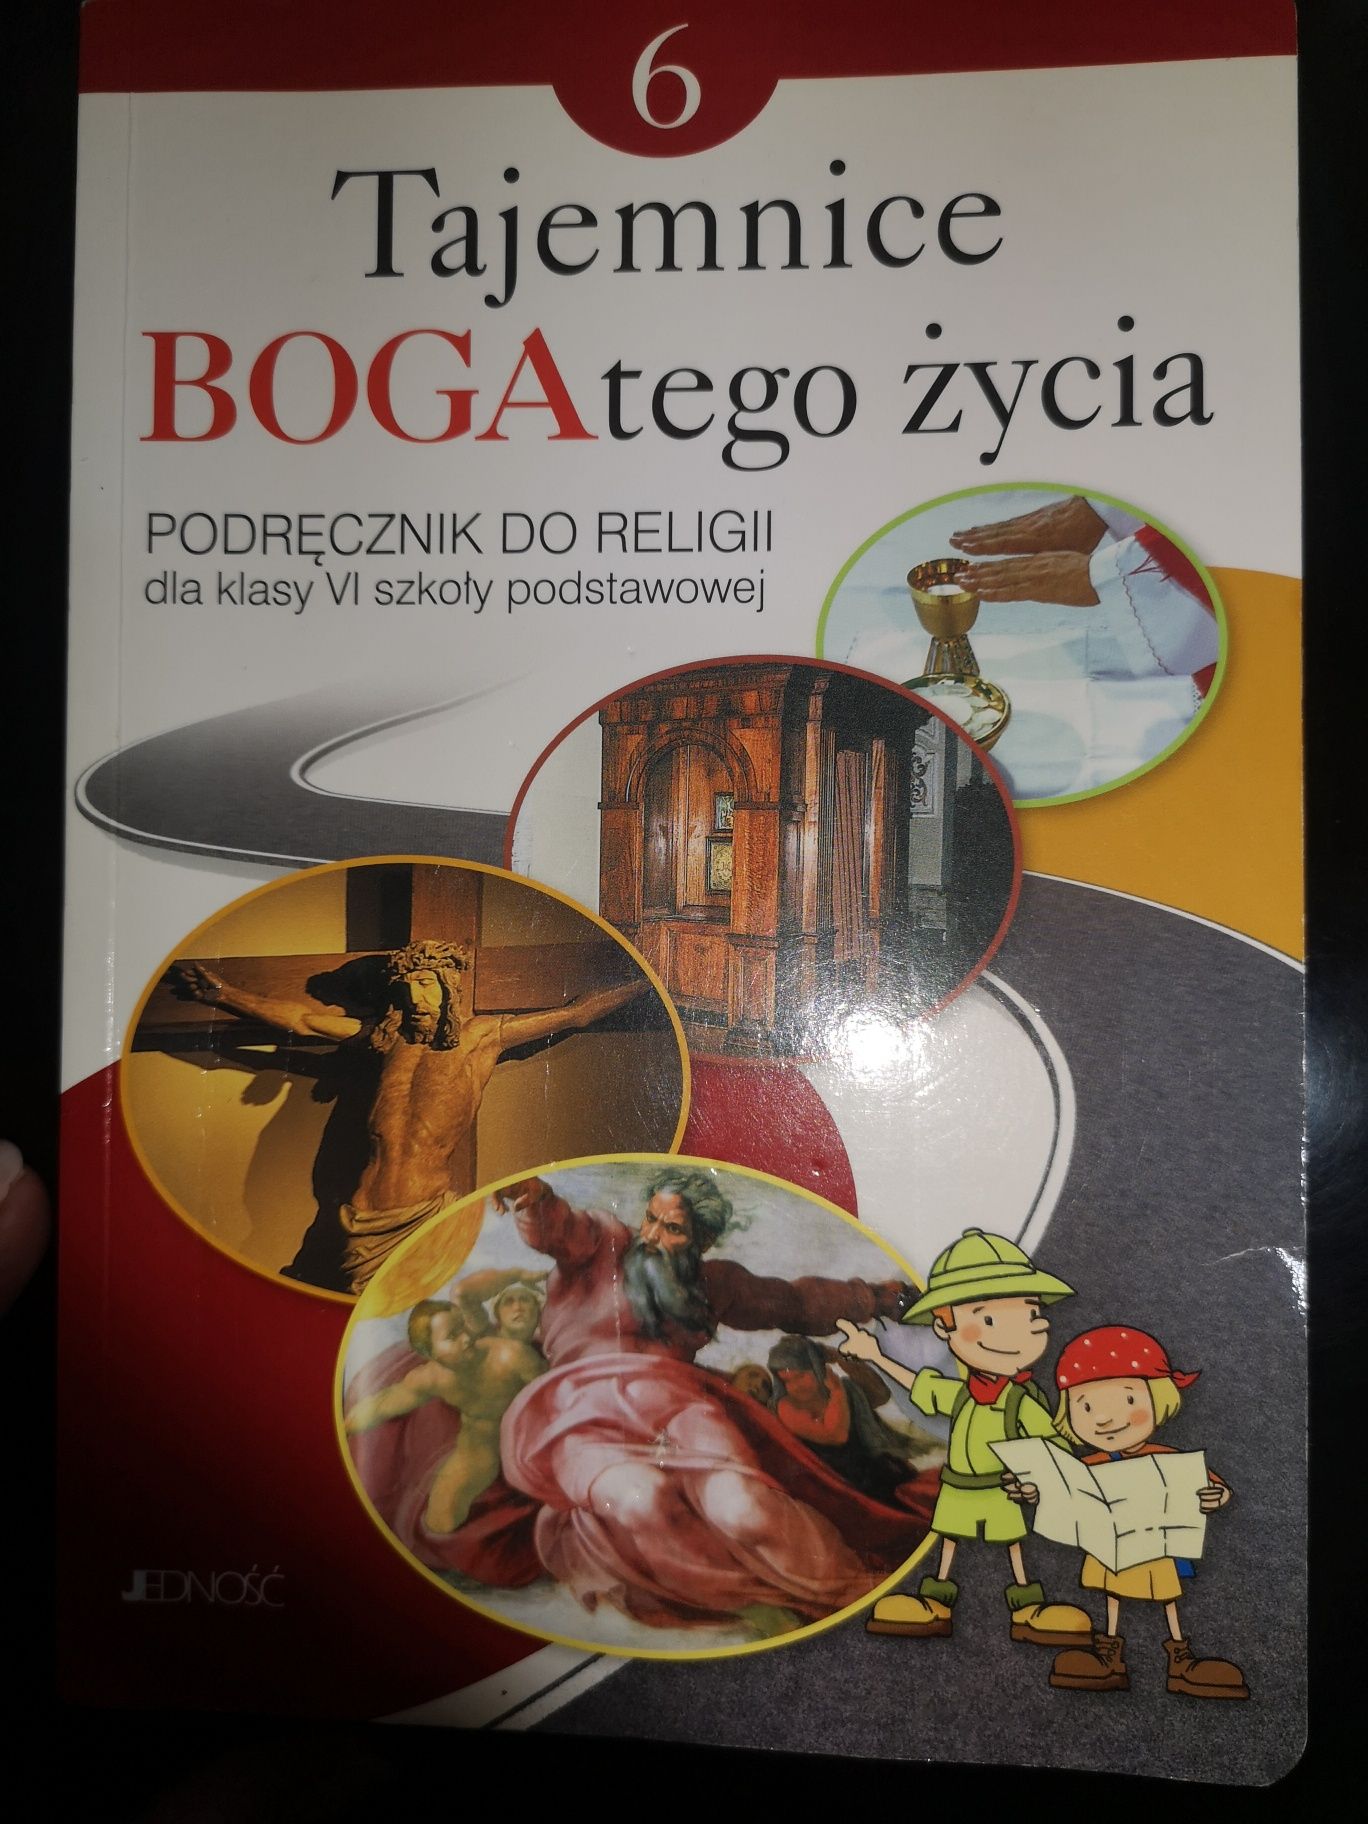 Książka do religii Tajemnice BOGAtego życia